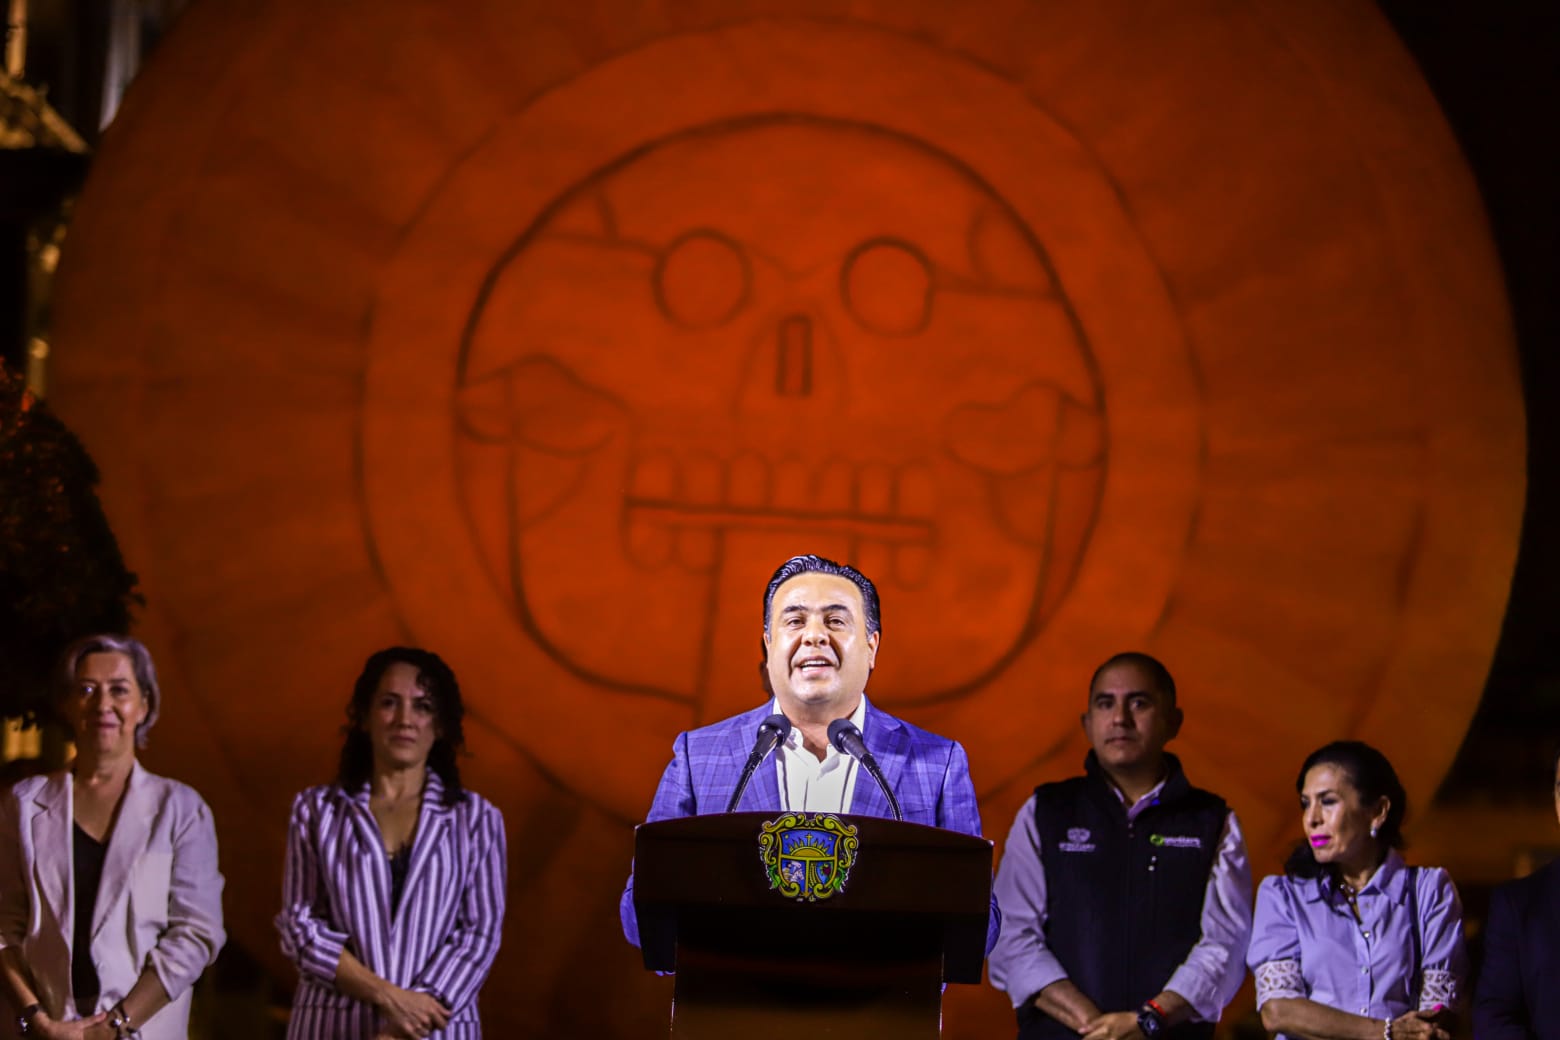 Para el Día de Muertos, inaugura Luis Nava el “Camino al Inframundo”